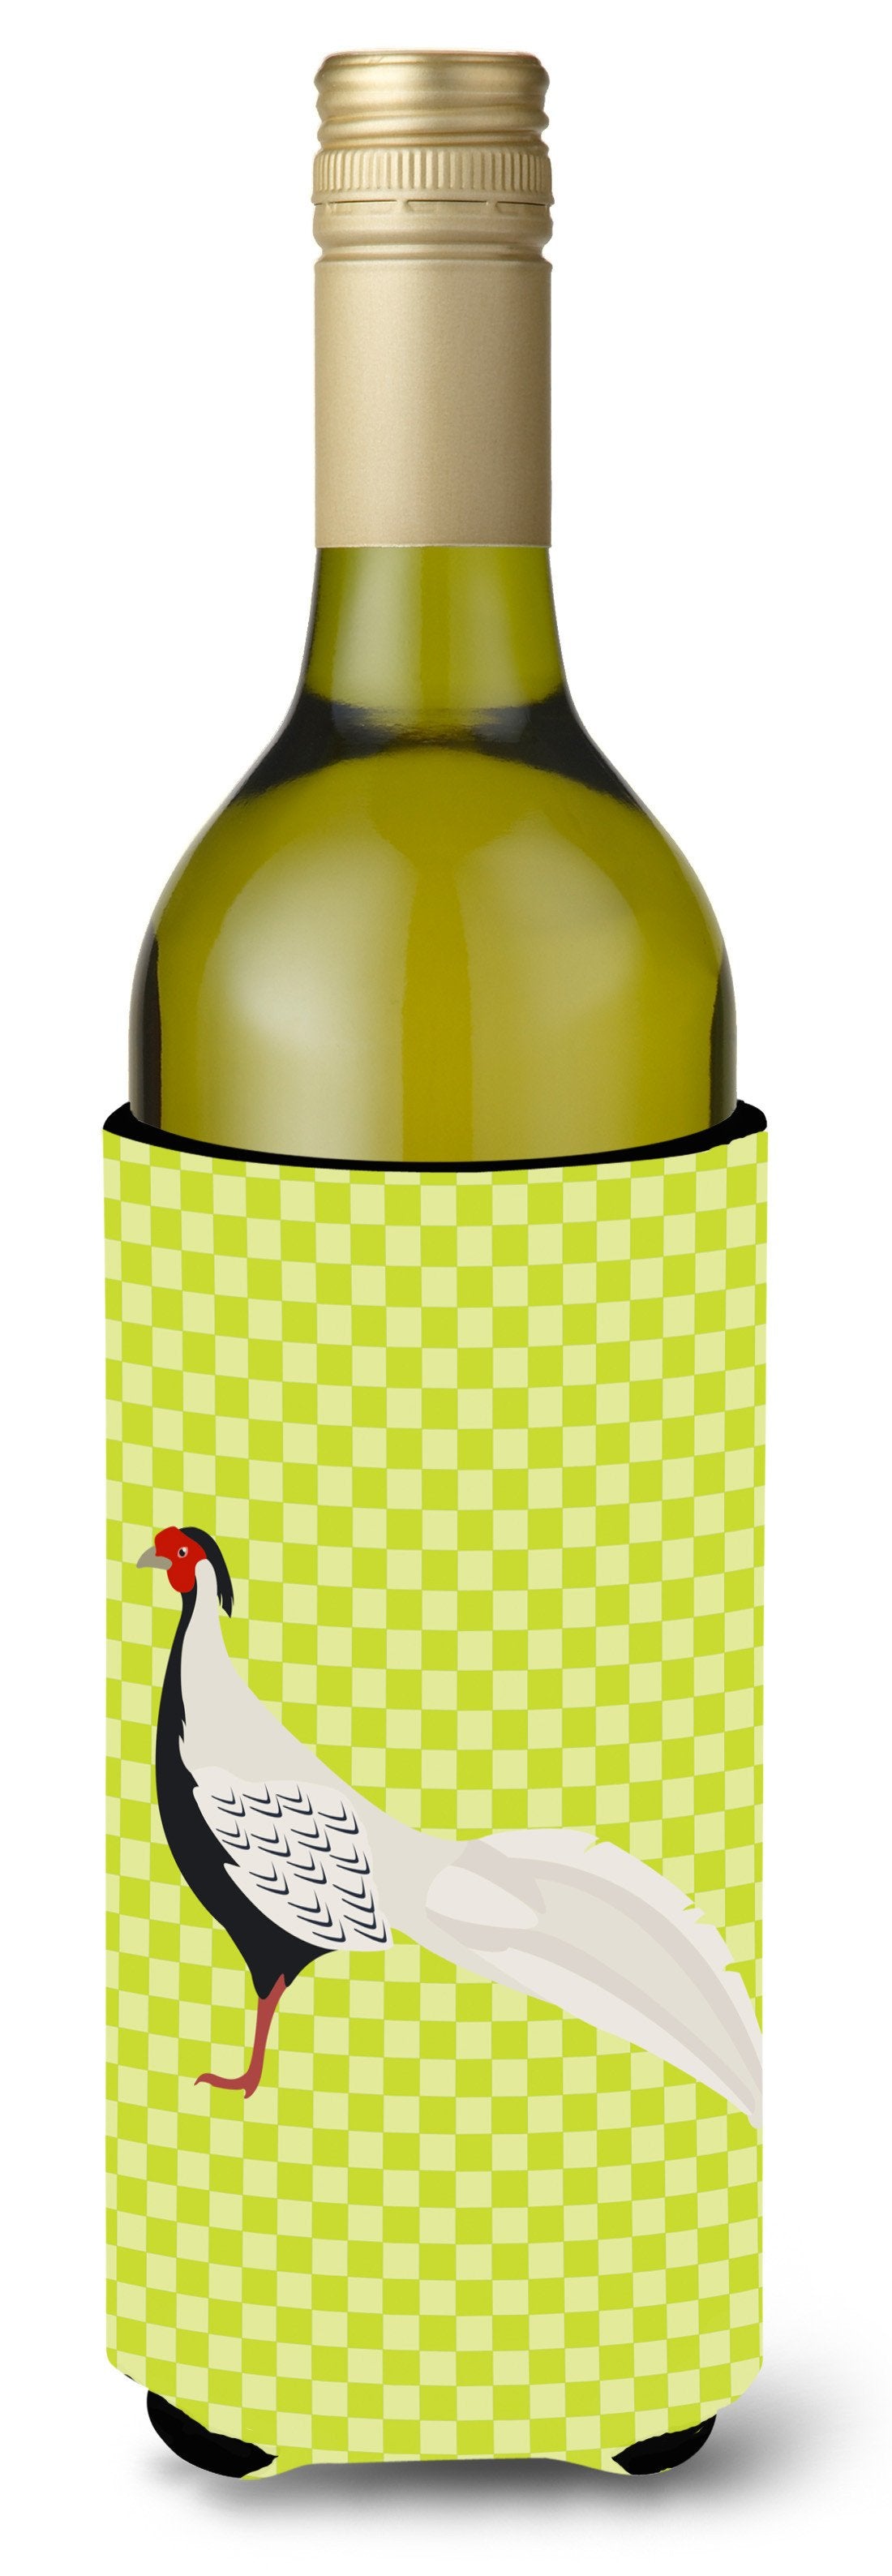 Silver Pheasant Green Wine Bottle Beverge Insulator Hugger BB7755LITERK by Caroline's Treasures